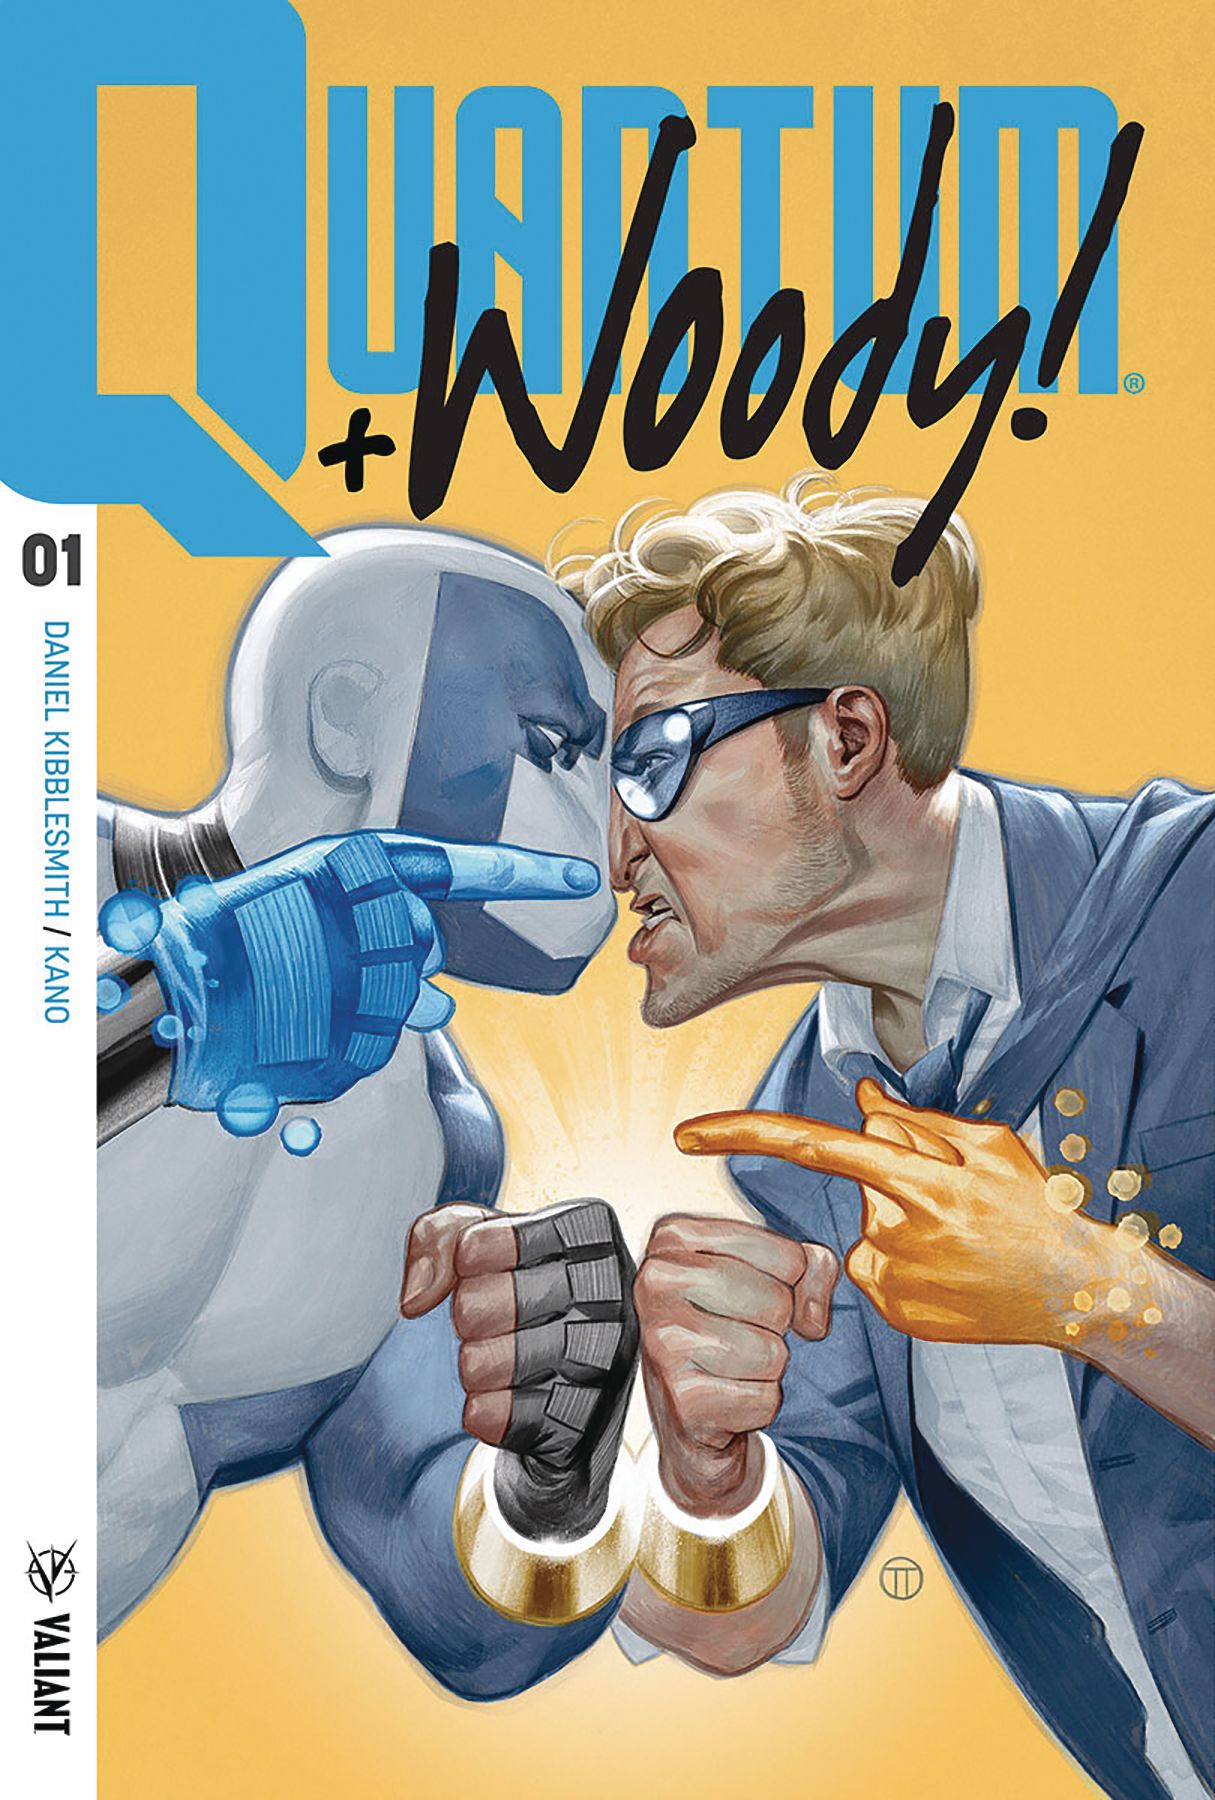 Quantum & Woody #1 Comic